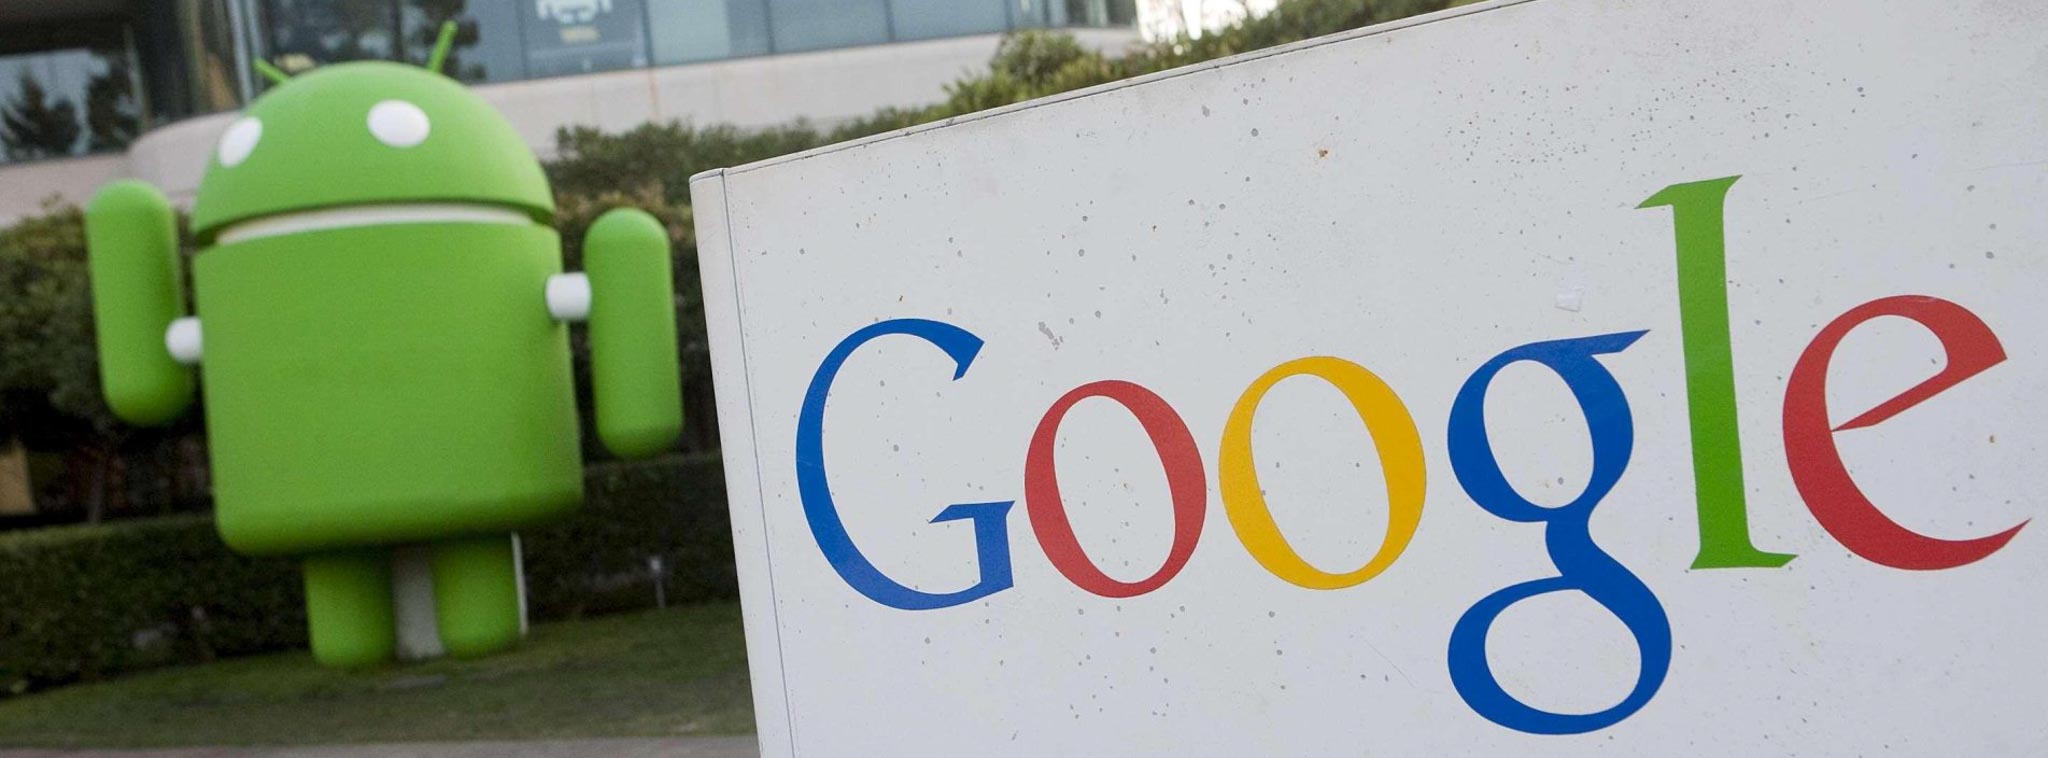 Google thừa nhận theo dõi vị trí người dùng điện thoại Android ngay cả khi đã tắt chế độ định vị